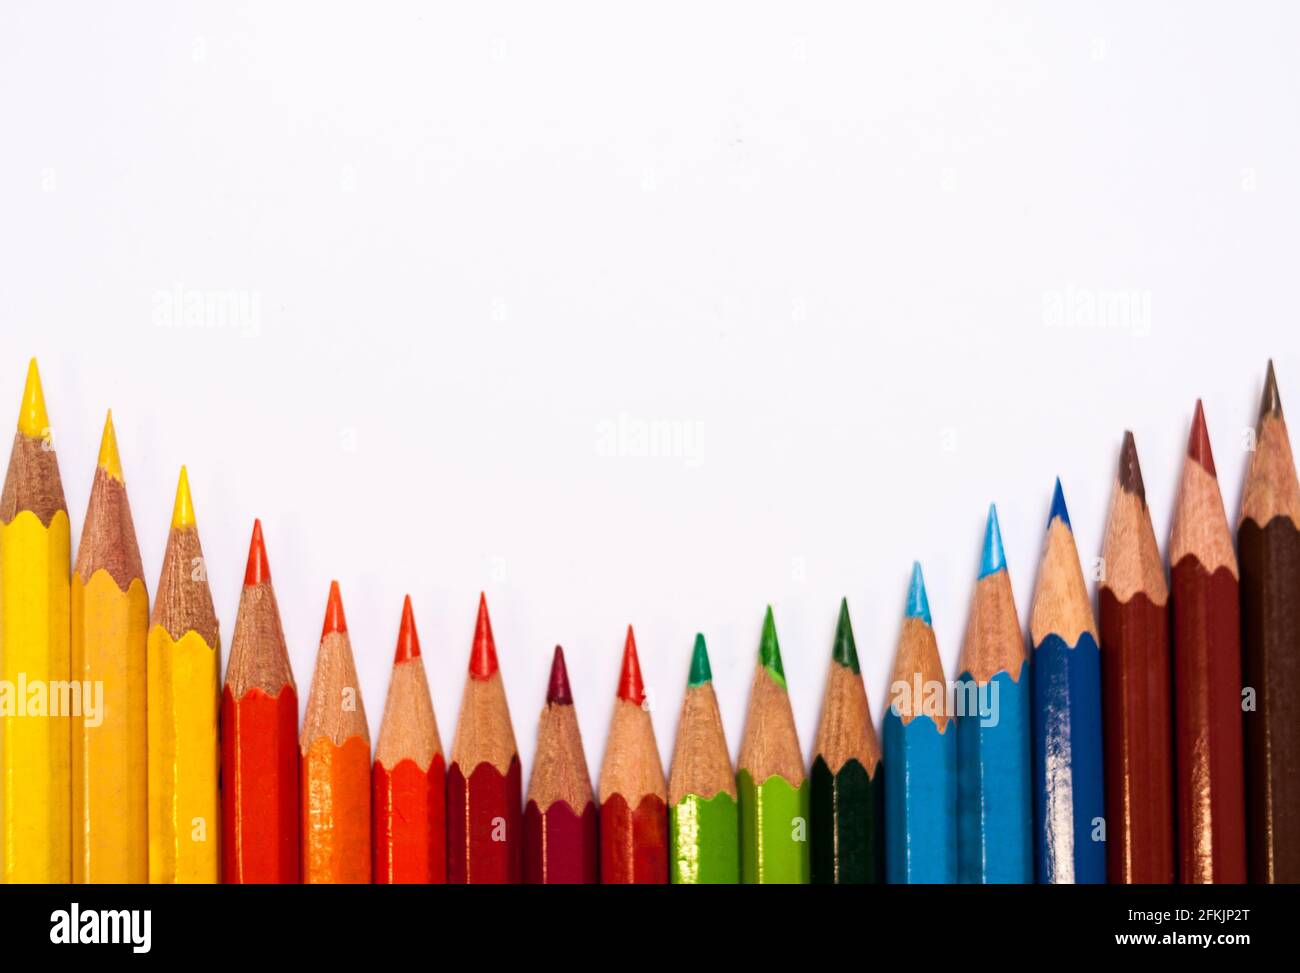 Sfondo bianco con una disposizione parallela di matite colorate con un campo di testo di grandi dimensioni Foto Stock